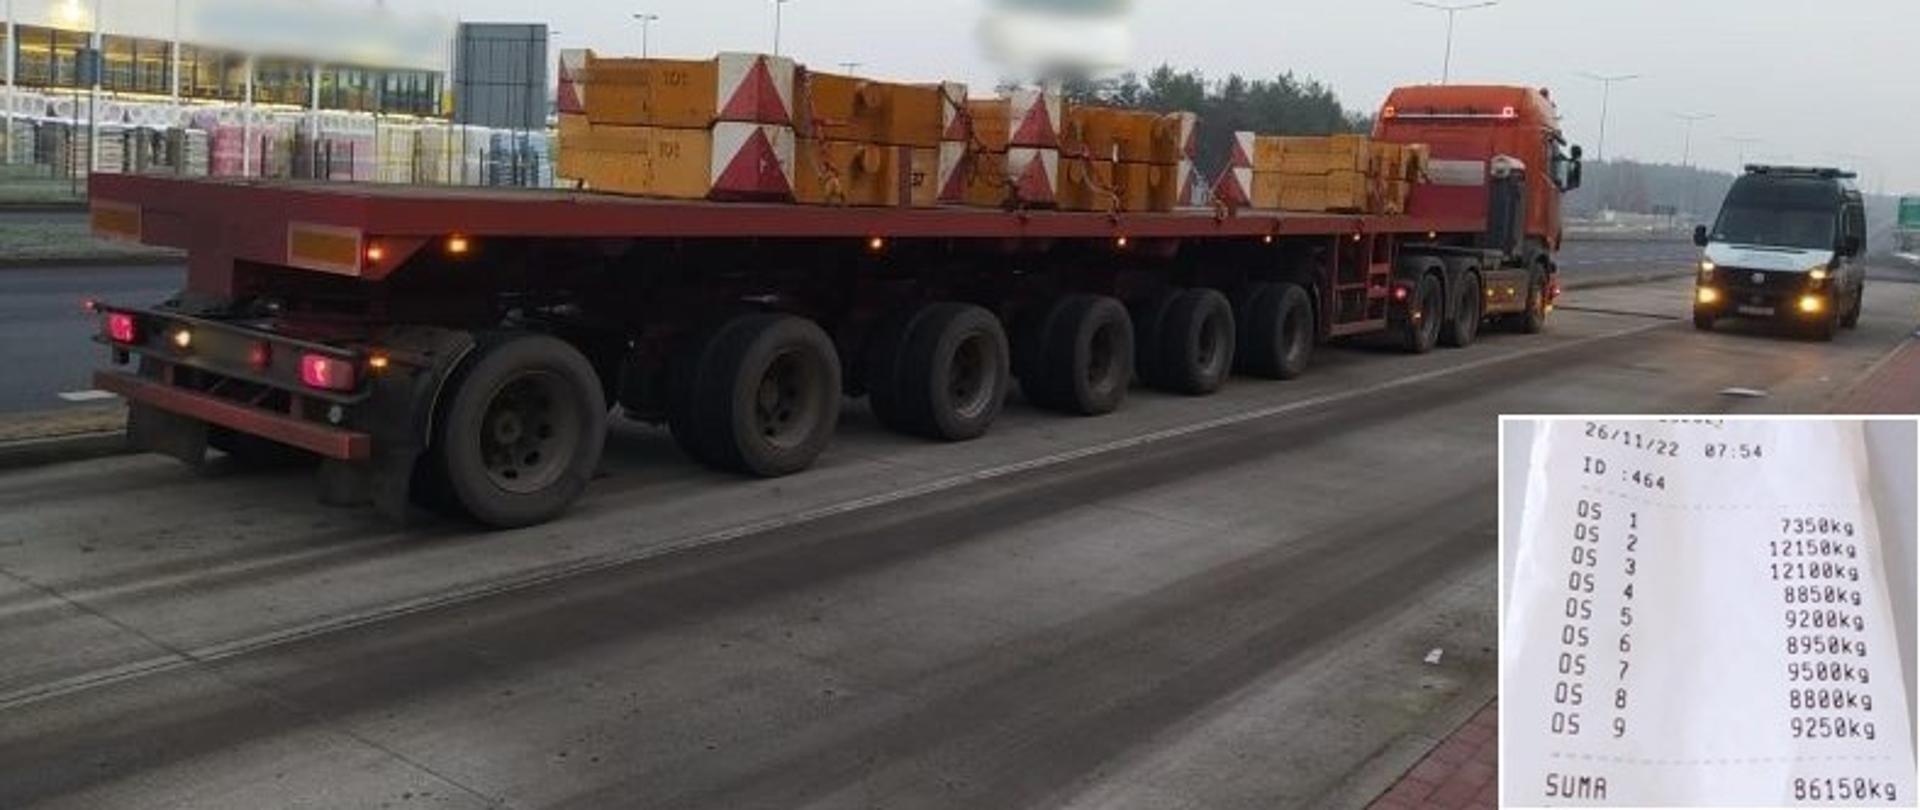 Na pierwszym planie (od lewej): tył przeładowanego zestawu ciężarowego z balastami do dźwigu. W tle: z przodu zestawu, obok ciągnika siodłowego, stoi oznakowany furgon kujawsko-pomorskiej Inspekcji Transportu Drogowego.